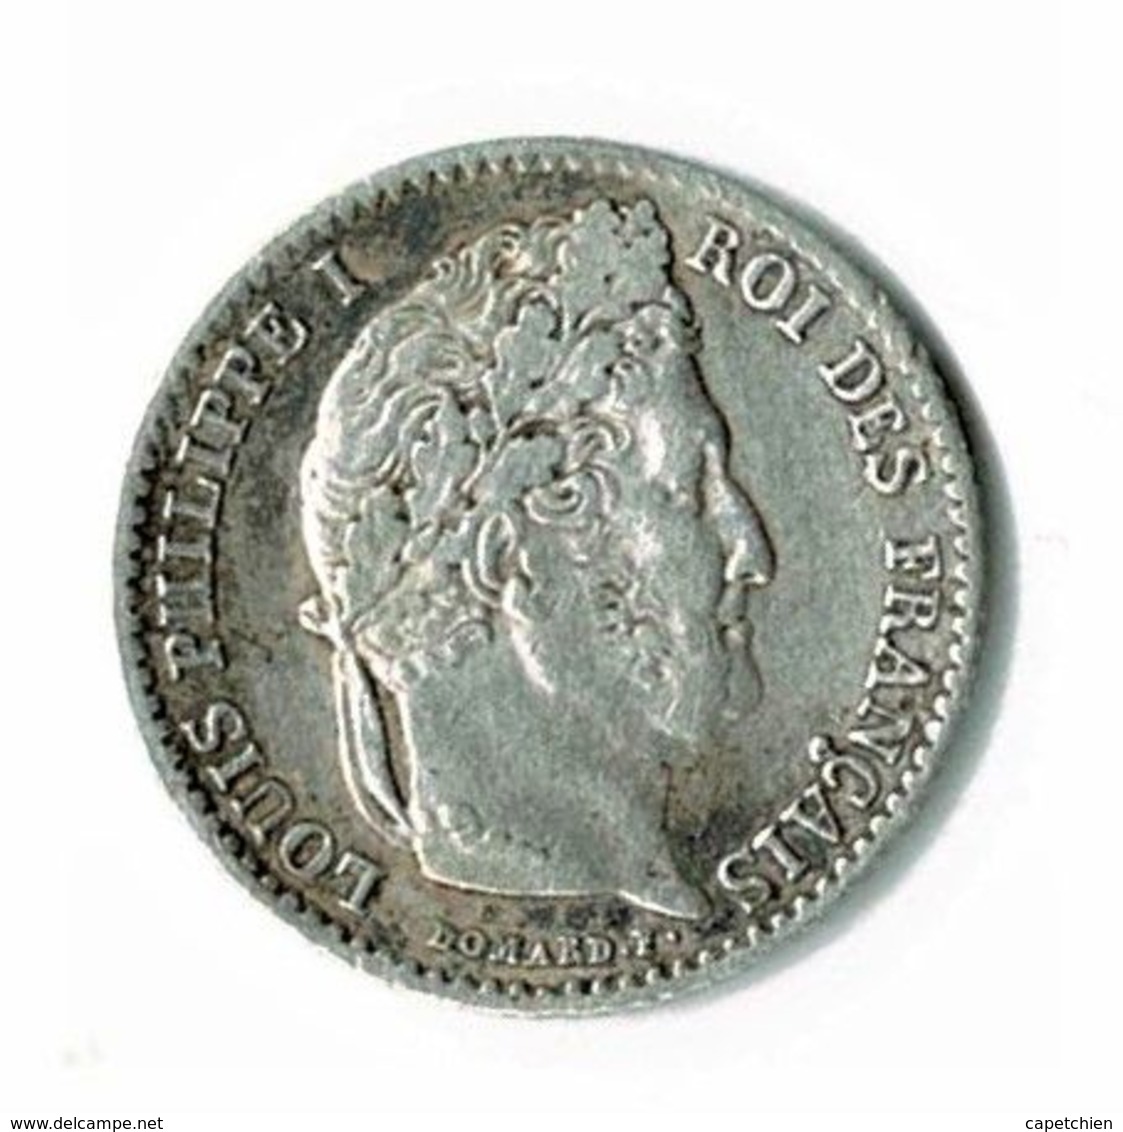 LOUIS PHILIPPE 1er / UN QUART DE FRANC / 1842 B - ROUEN / ETAT SUP - 1/4 Franc